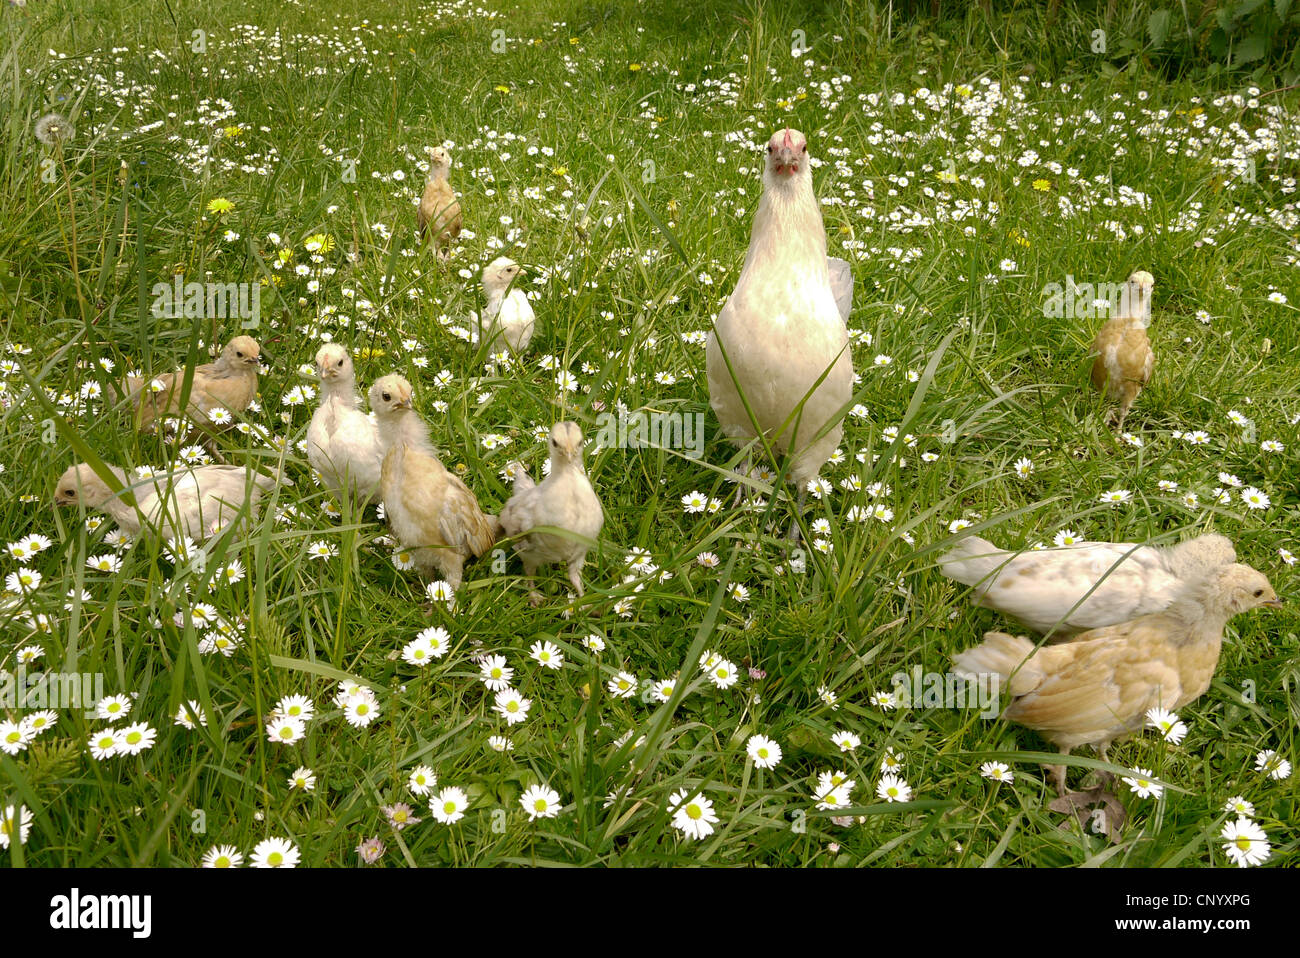 Bantam (Gallus gallus f. domestica), gallina con pollitos en una pradera, Alemania Foto de stock